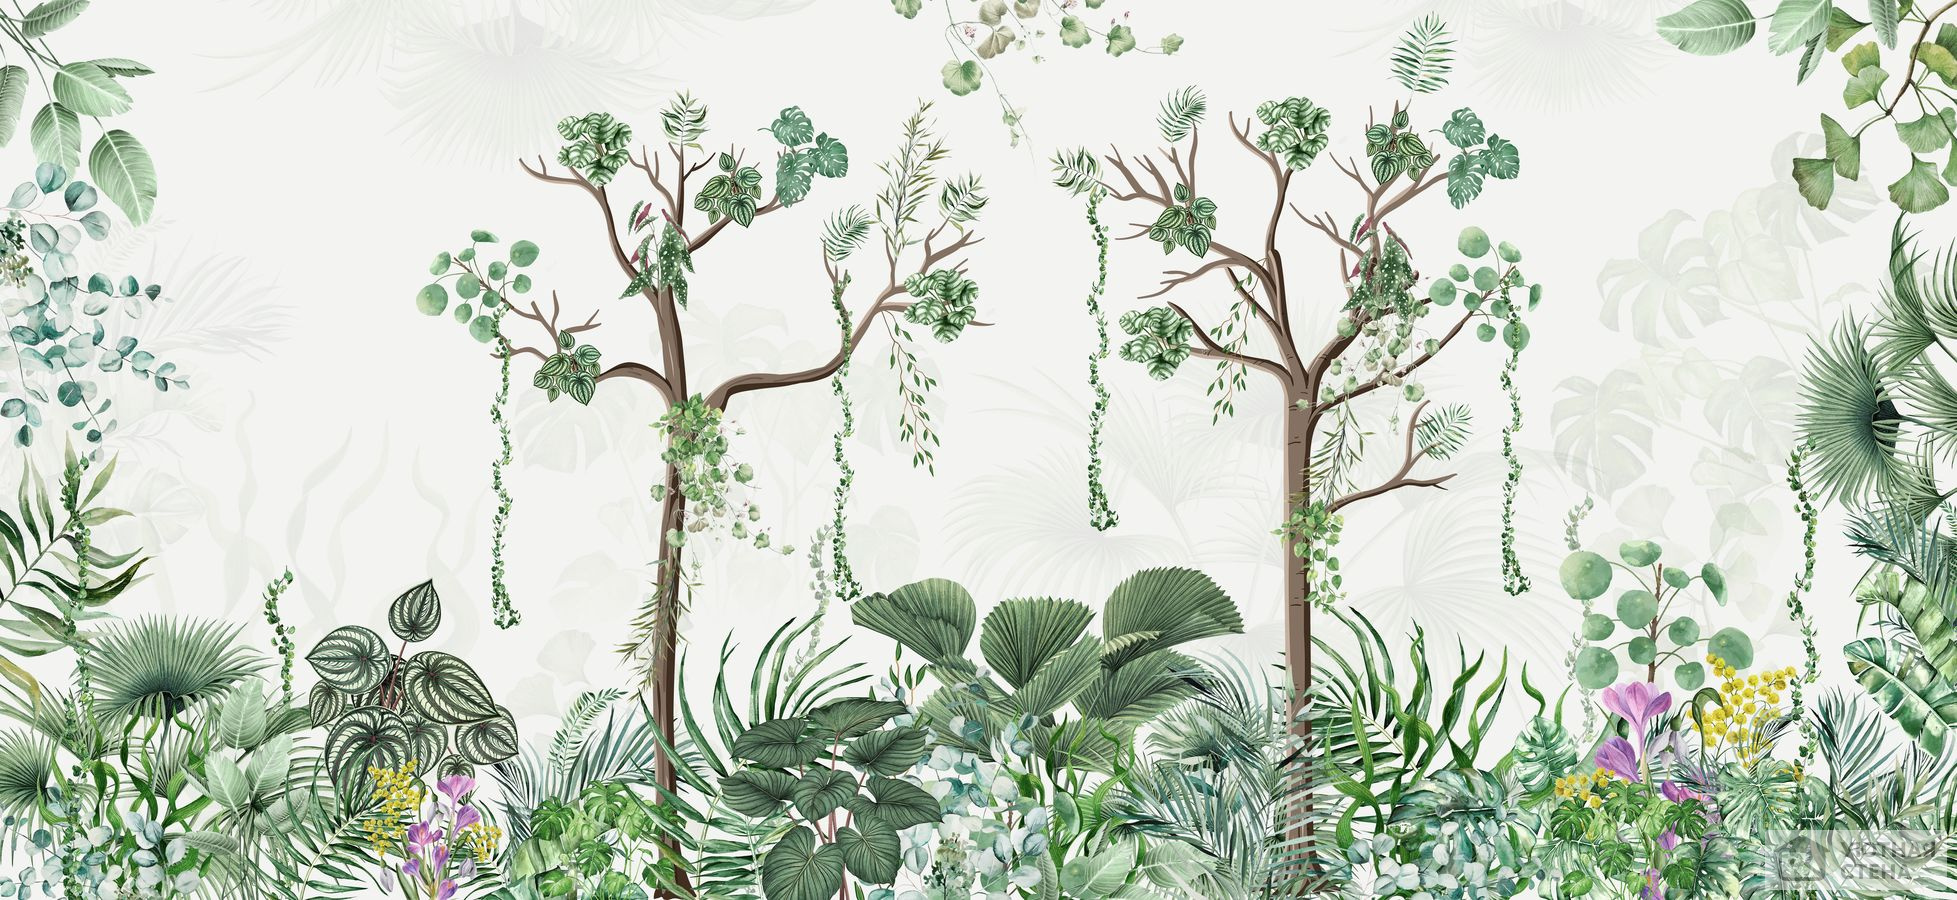 Панно с тропическими деревьями и листьями